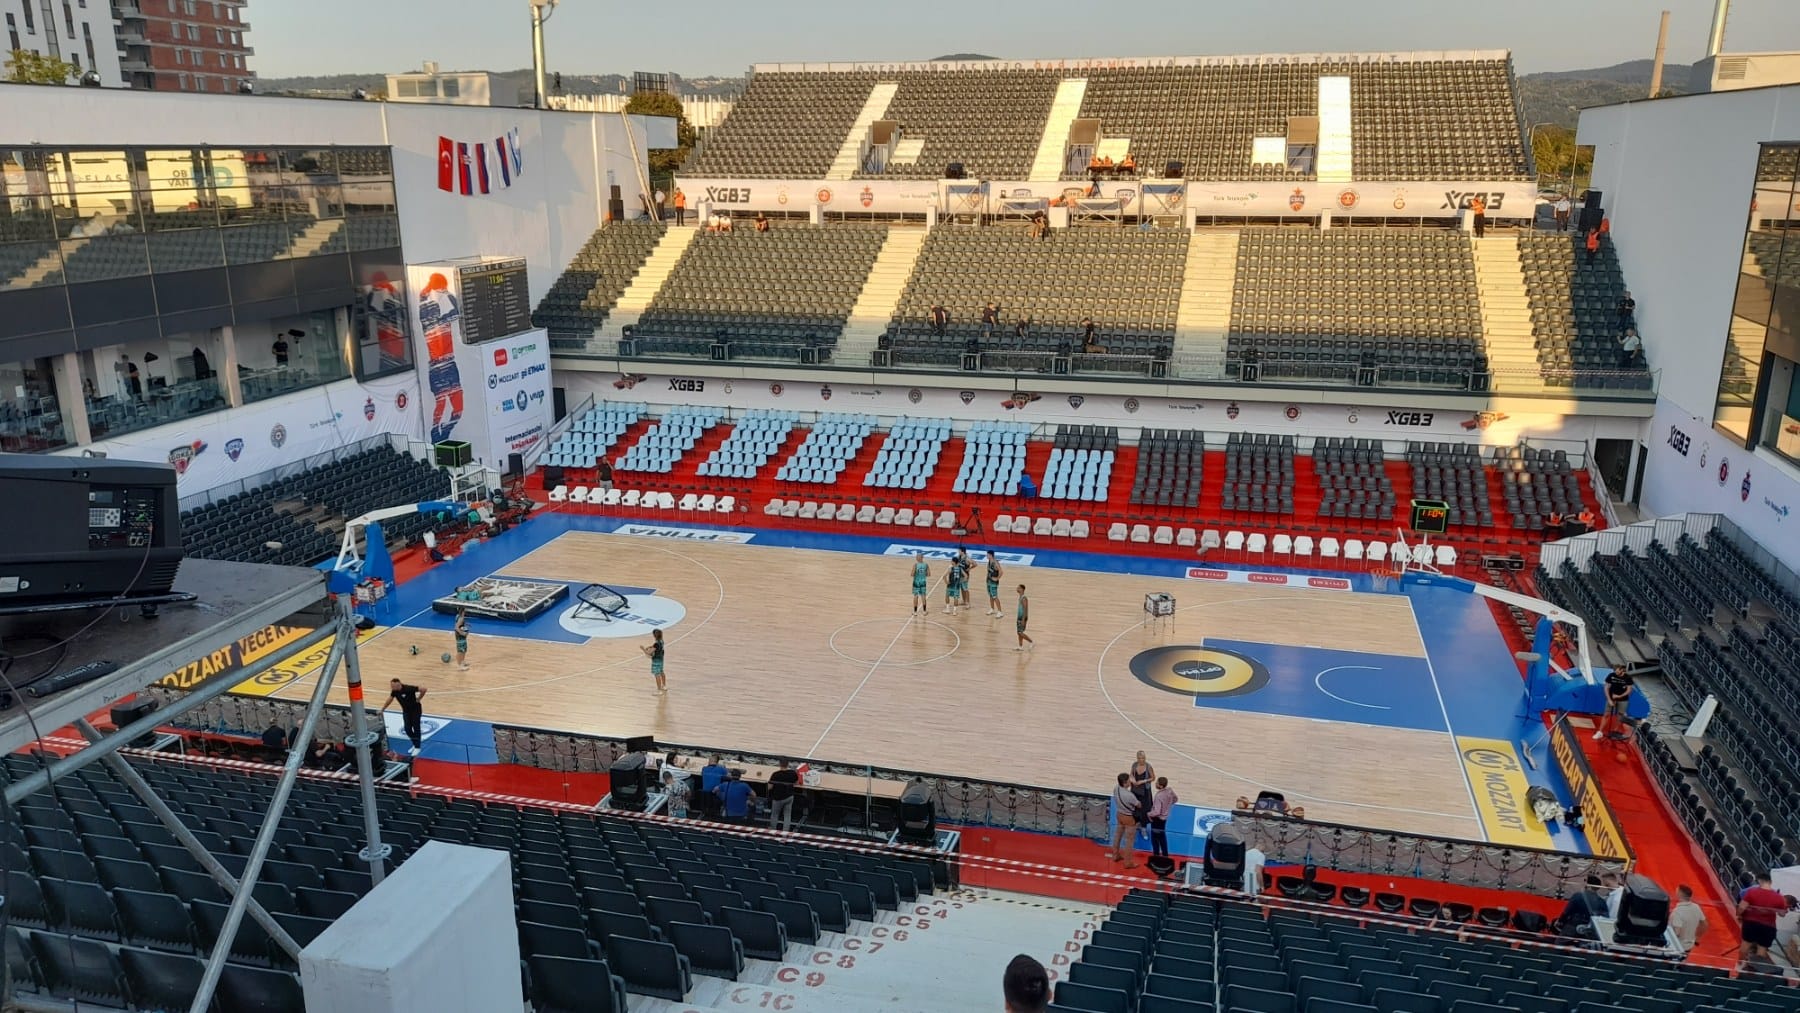 Otvoren Internacionalni košarkaški turnir "Prvih 50 godina Igokea"